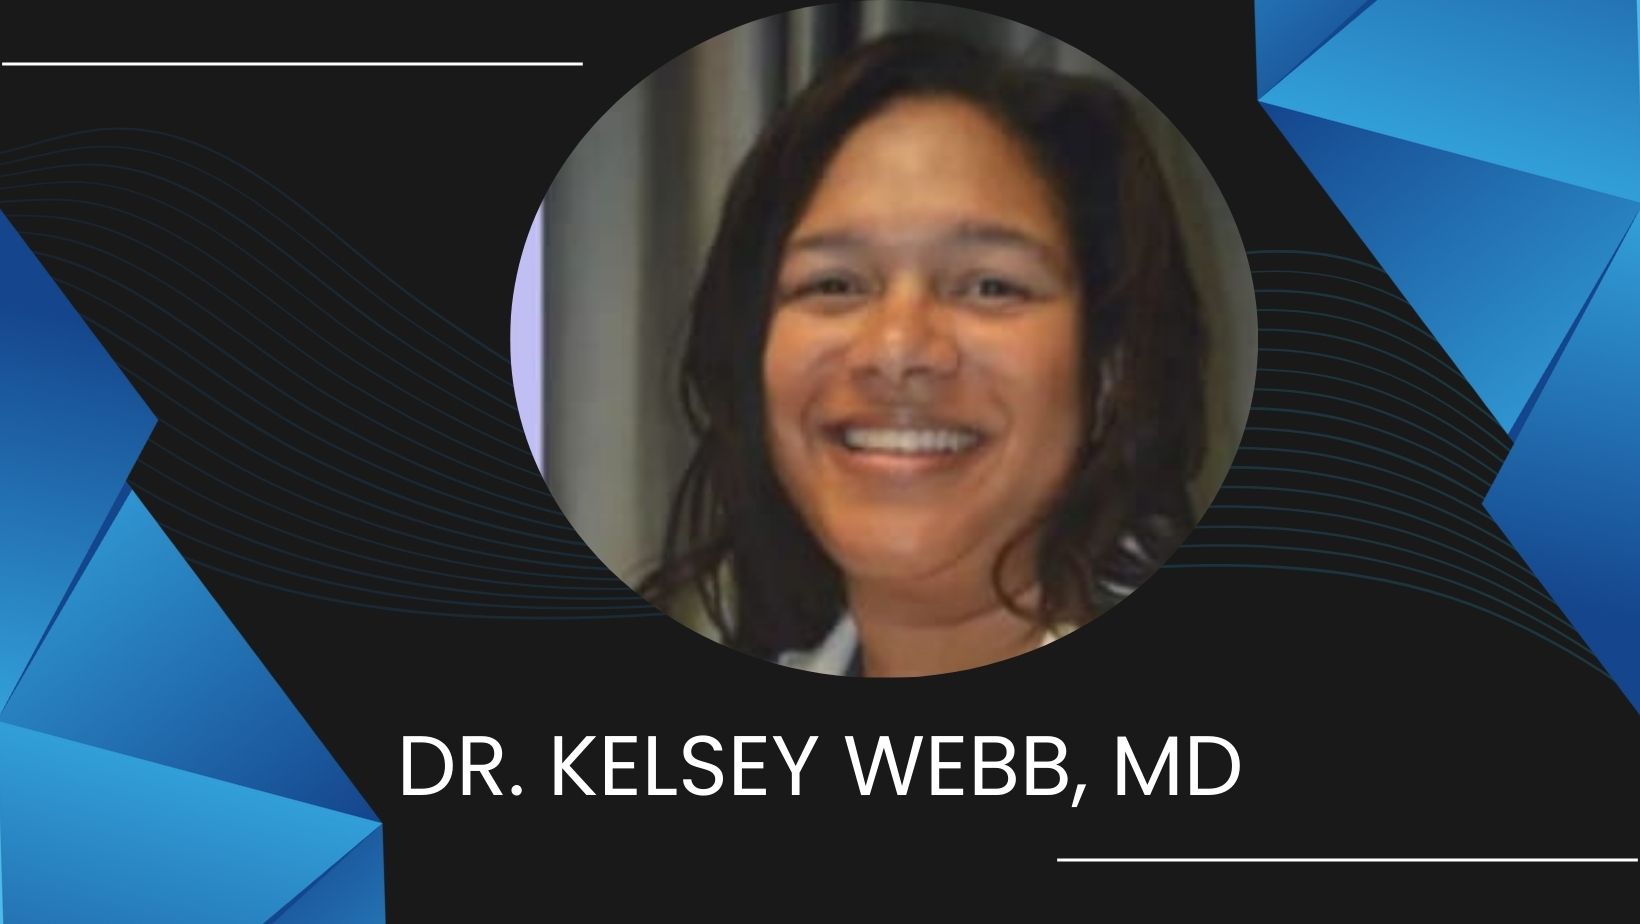 Dr. Kelsey Webb